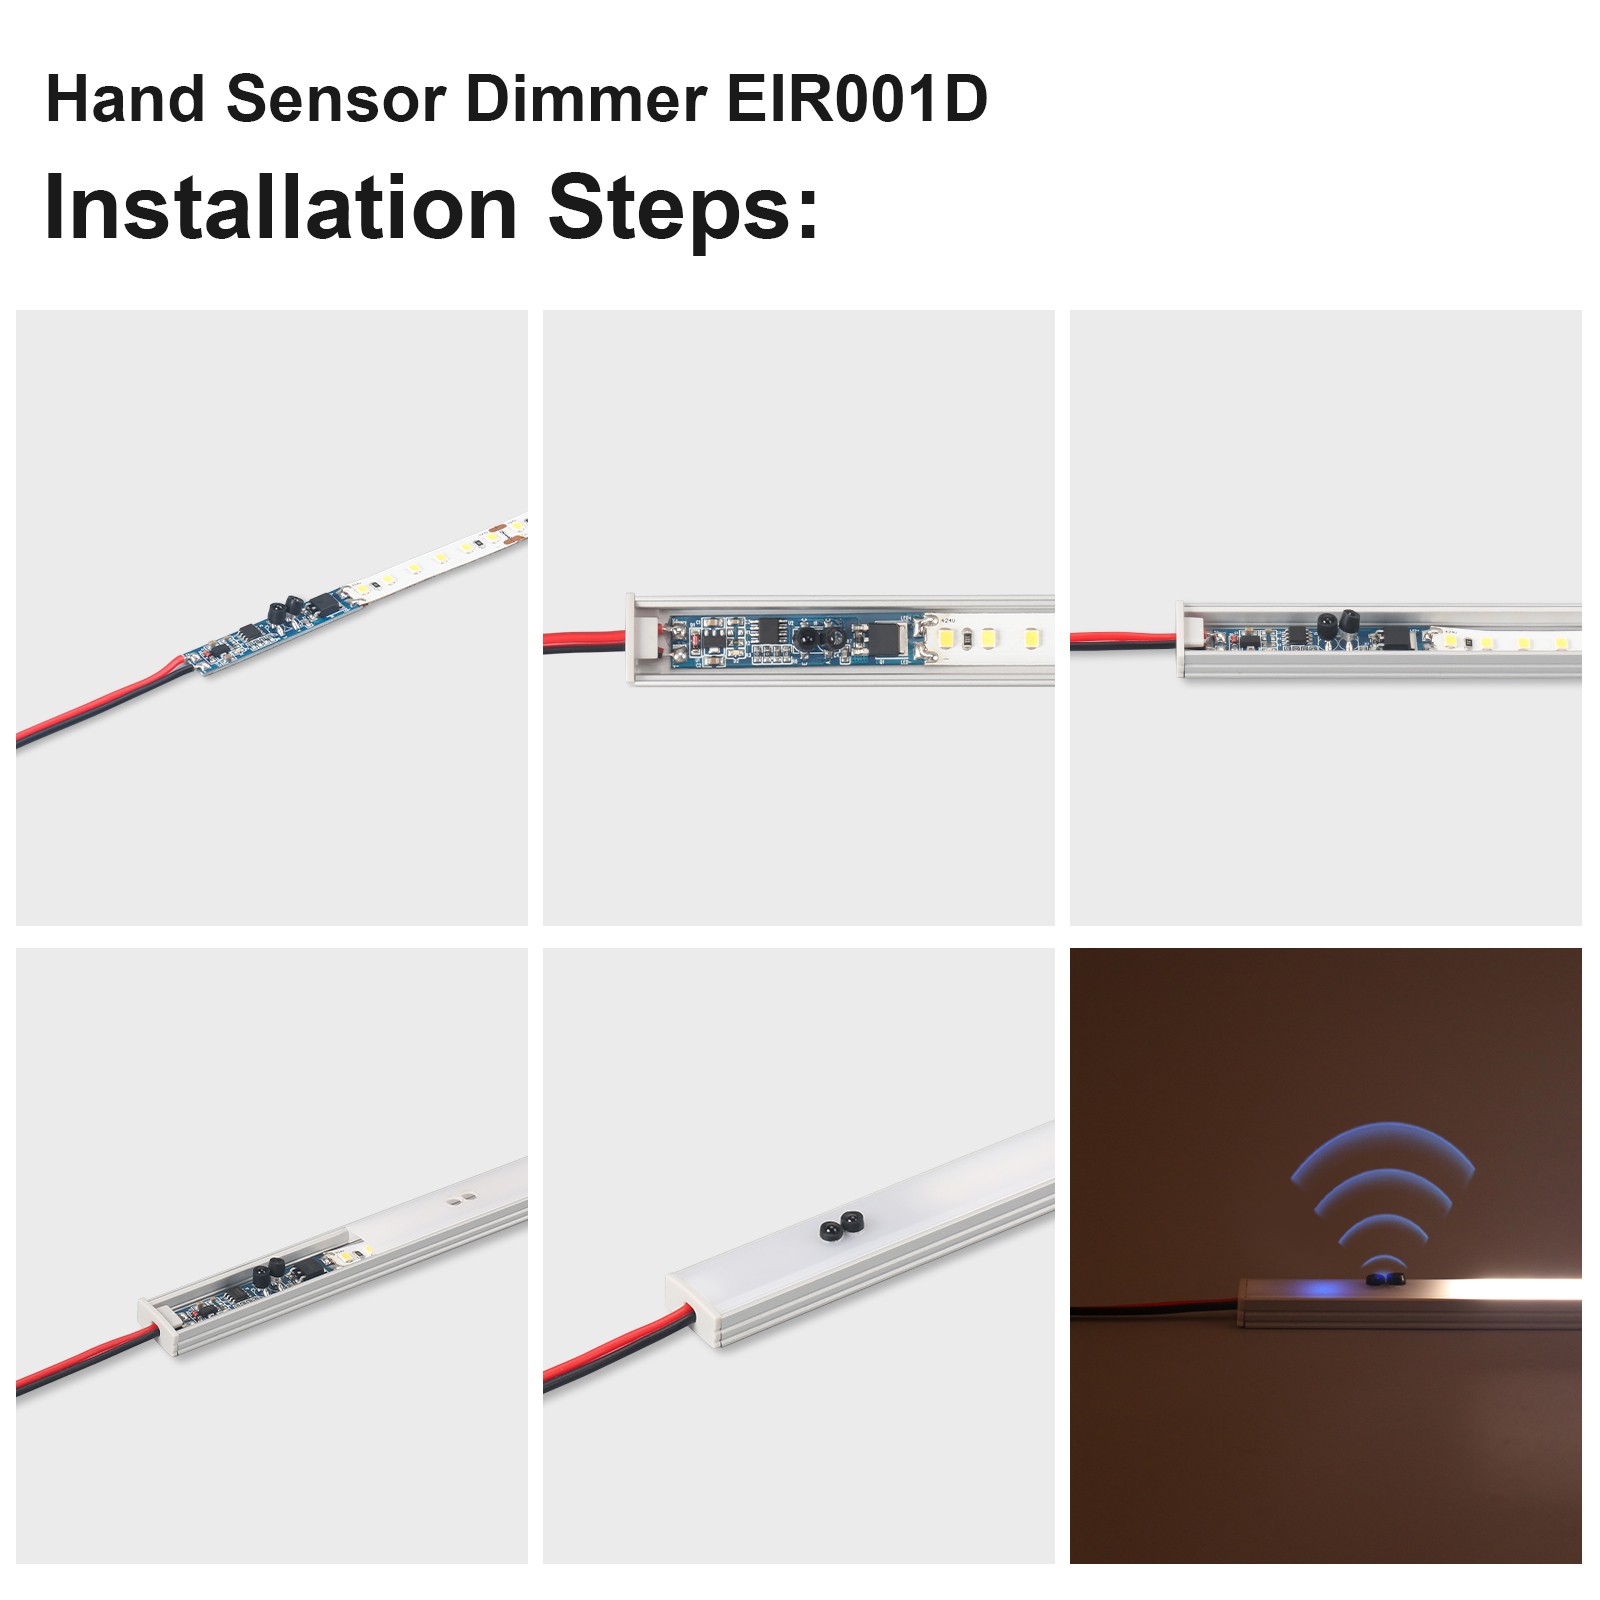 EIR001D(Hand Sensor Dimmer)